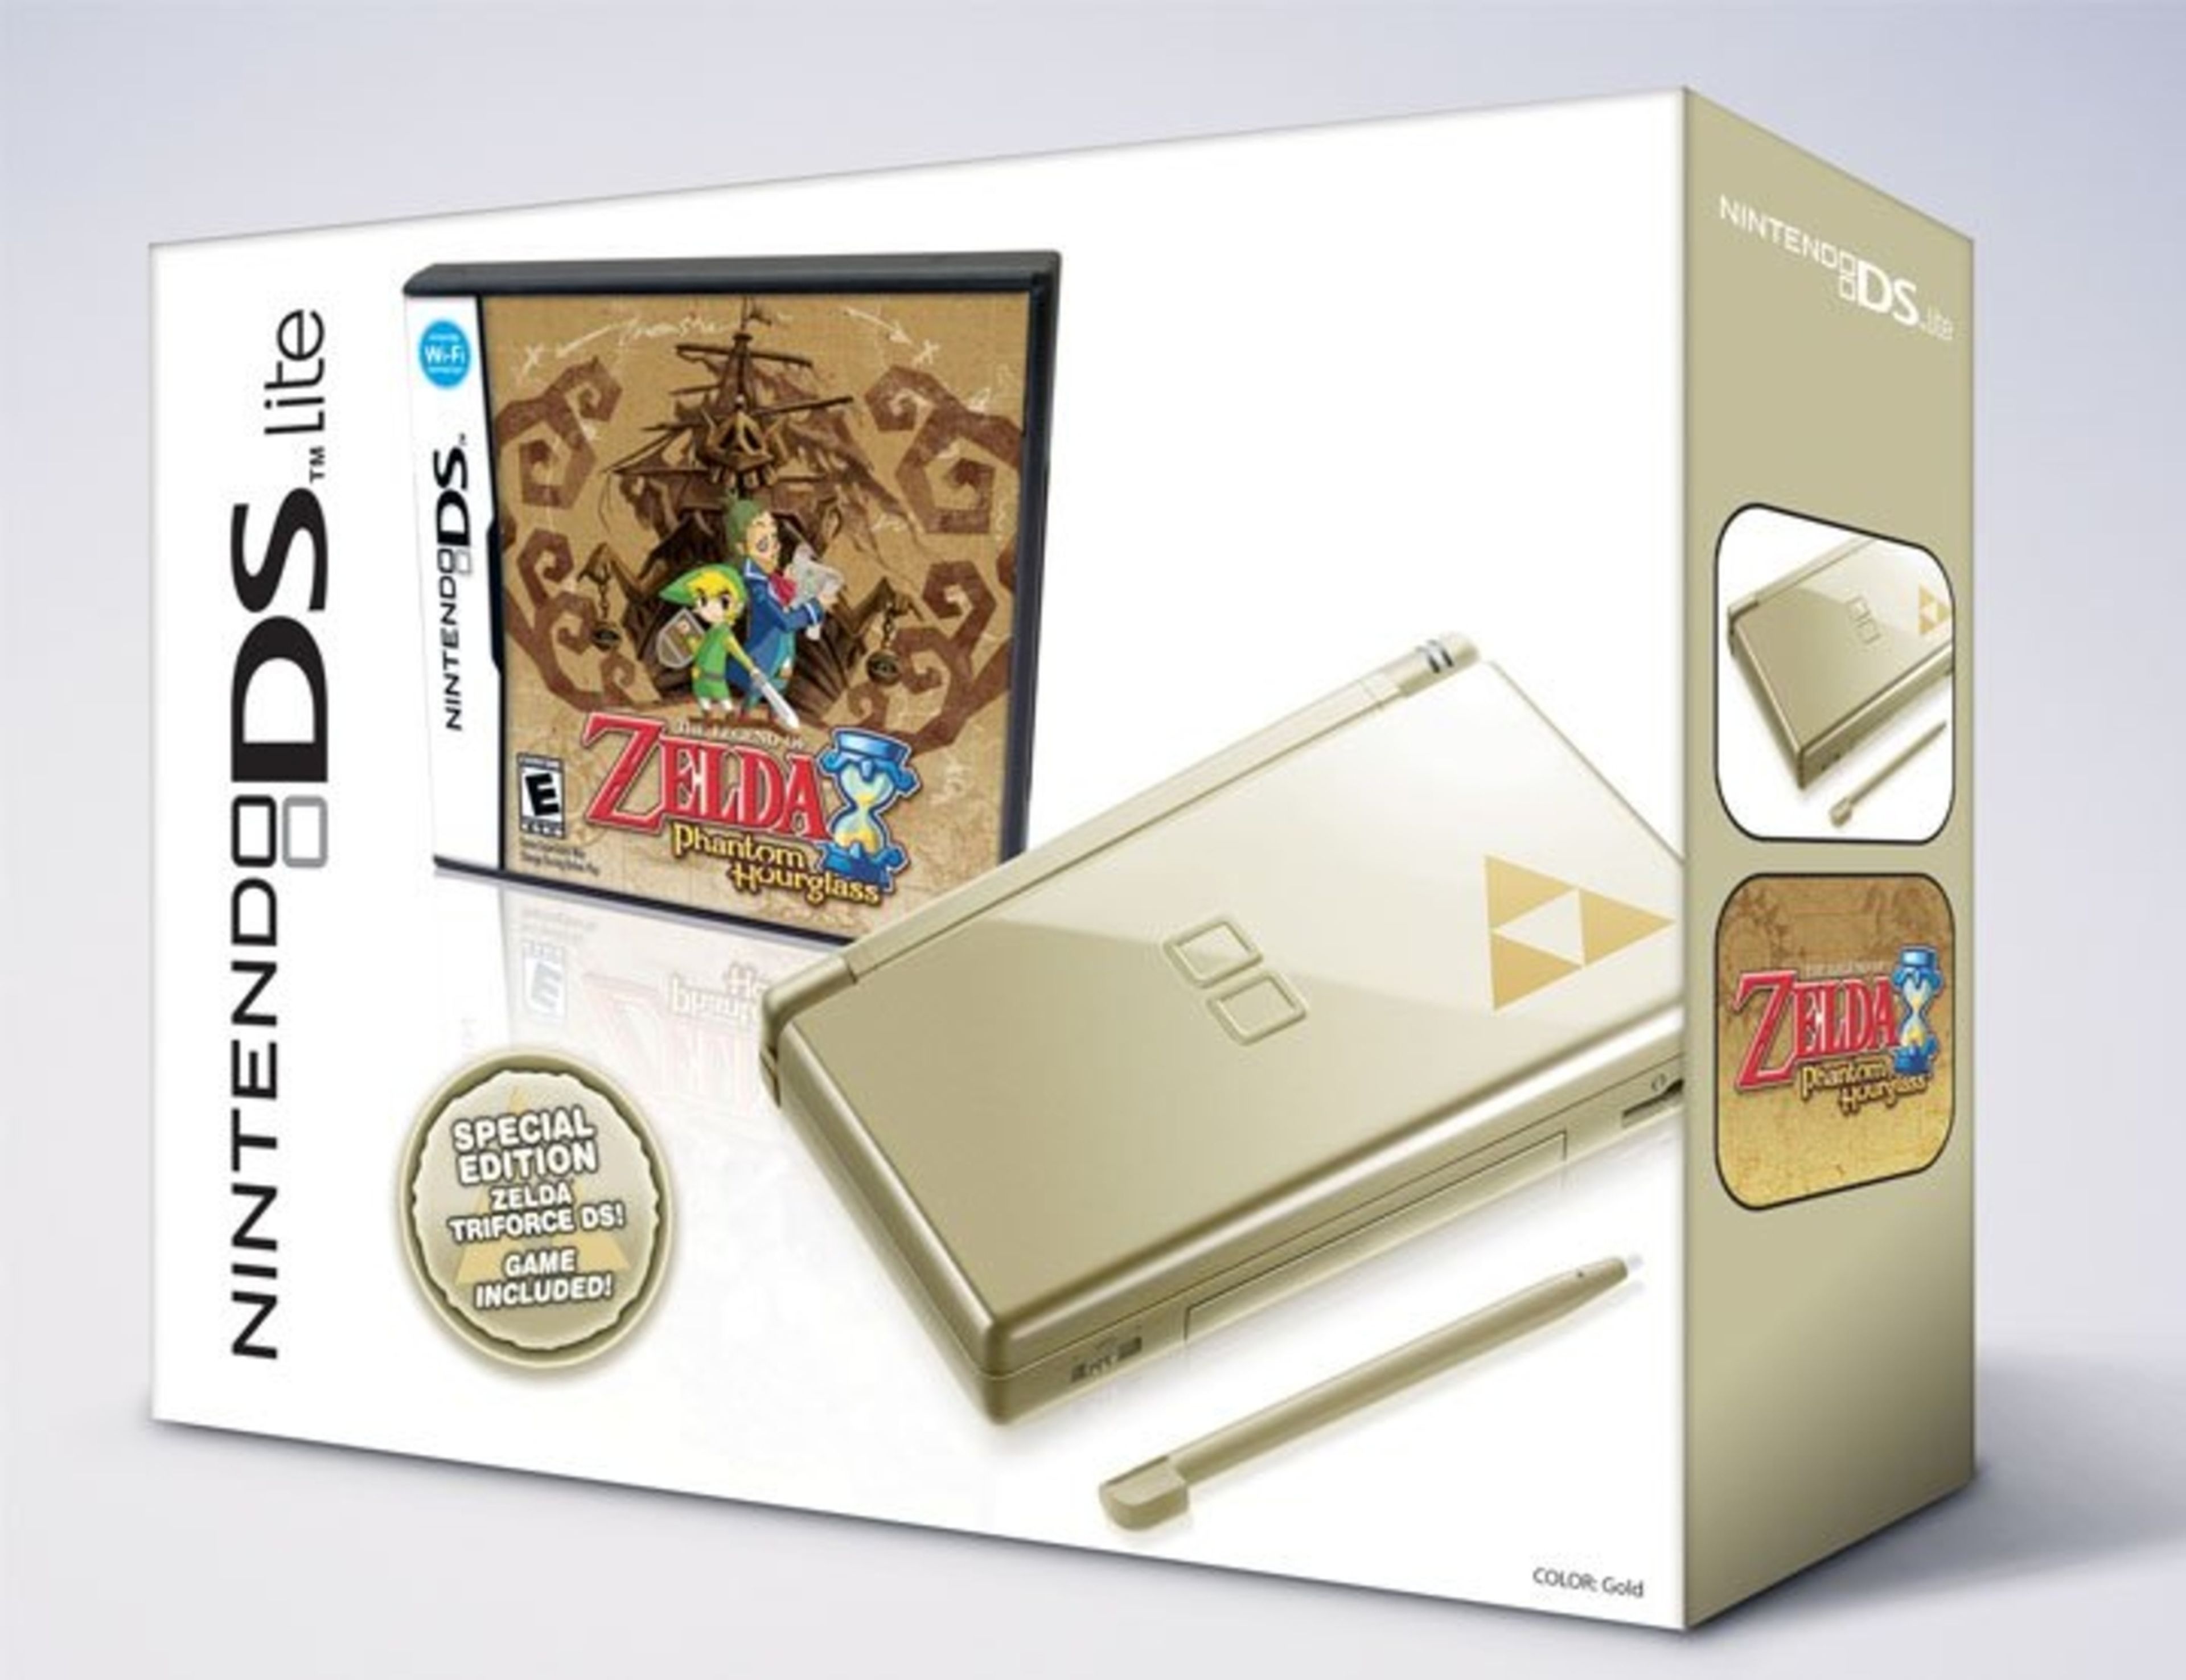 Nintendo DS Zelda Gold